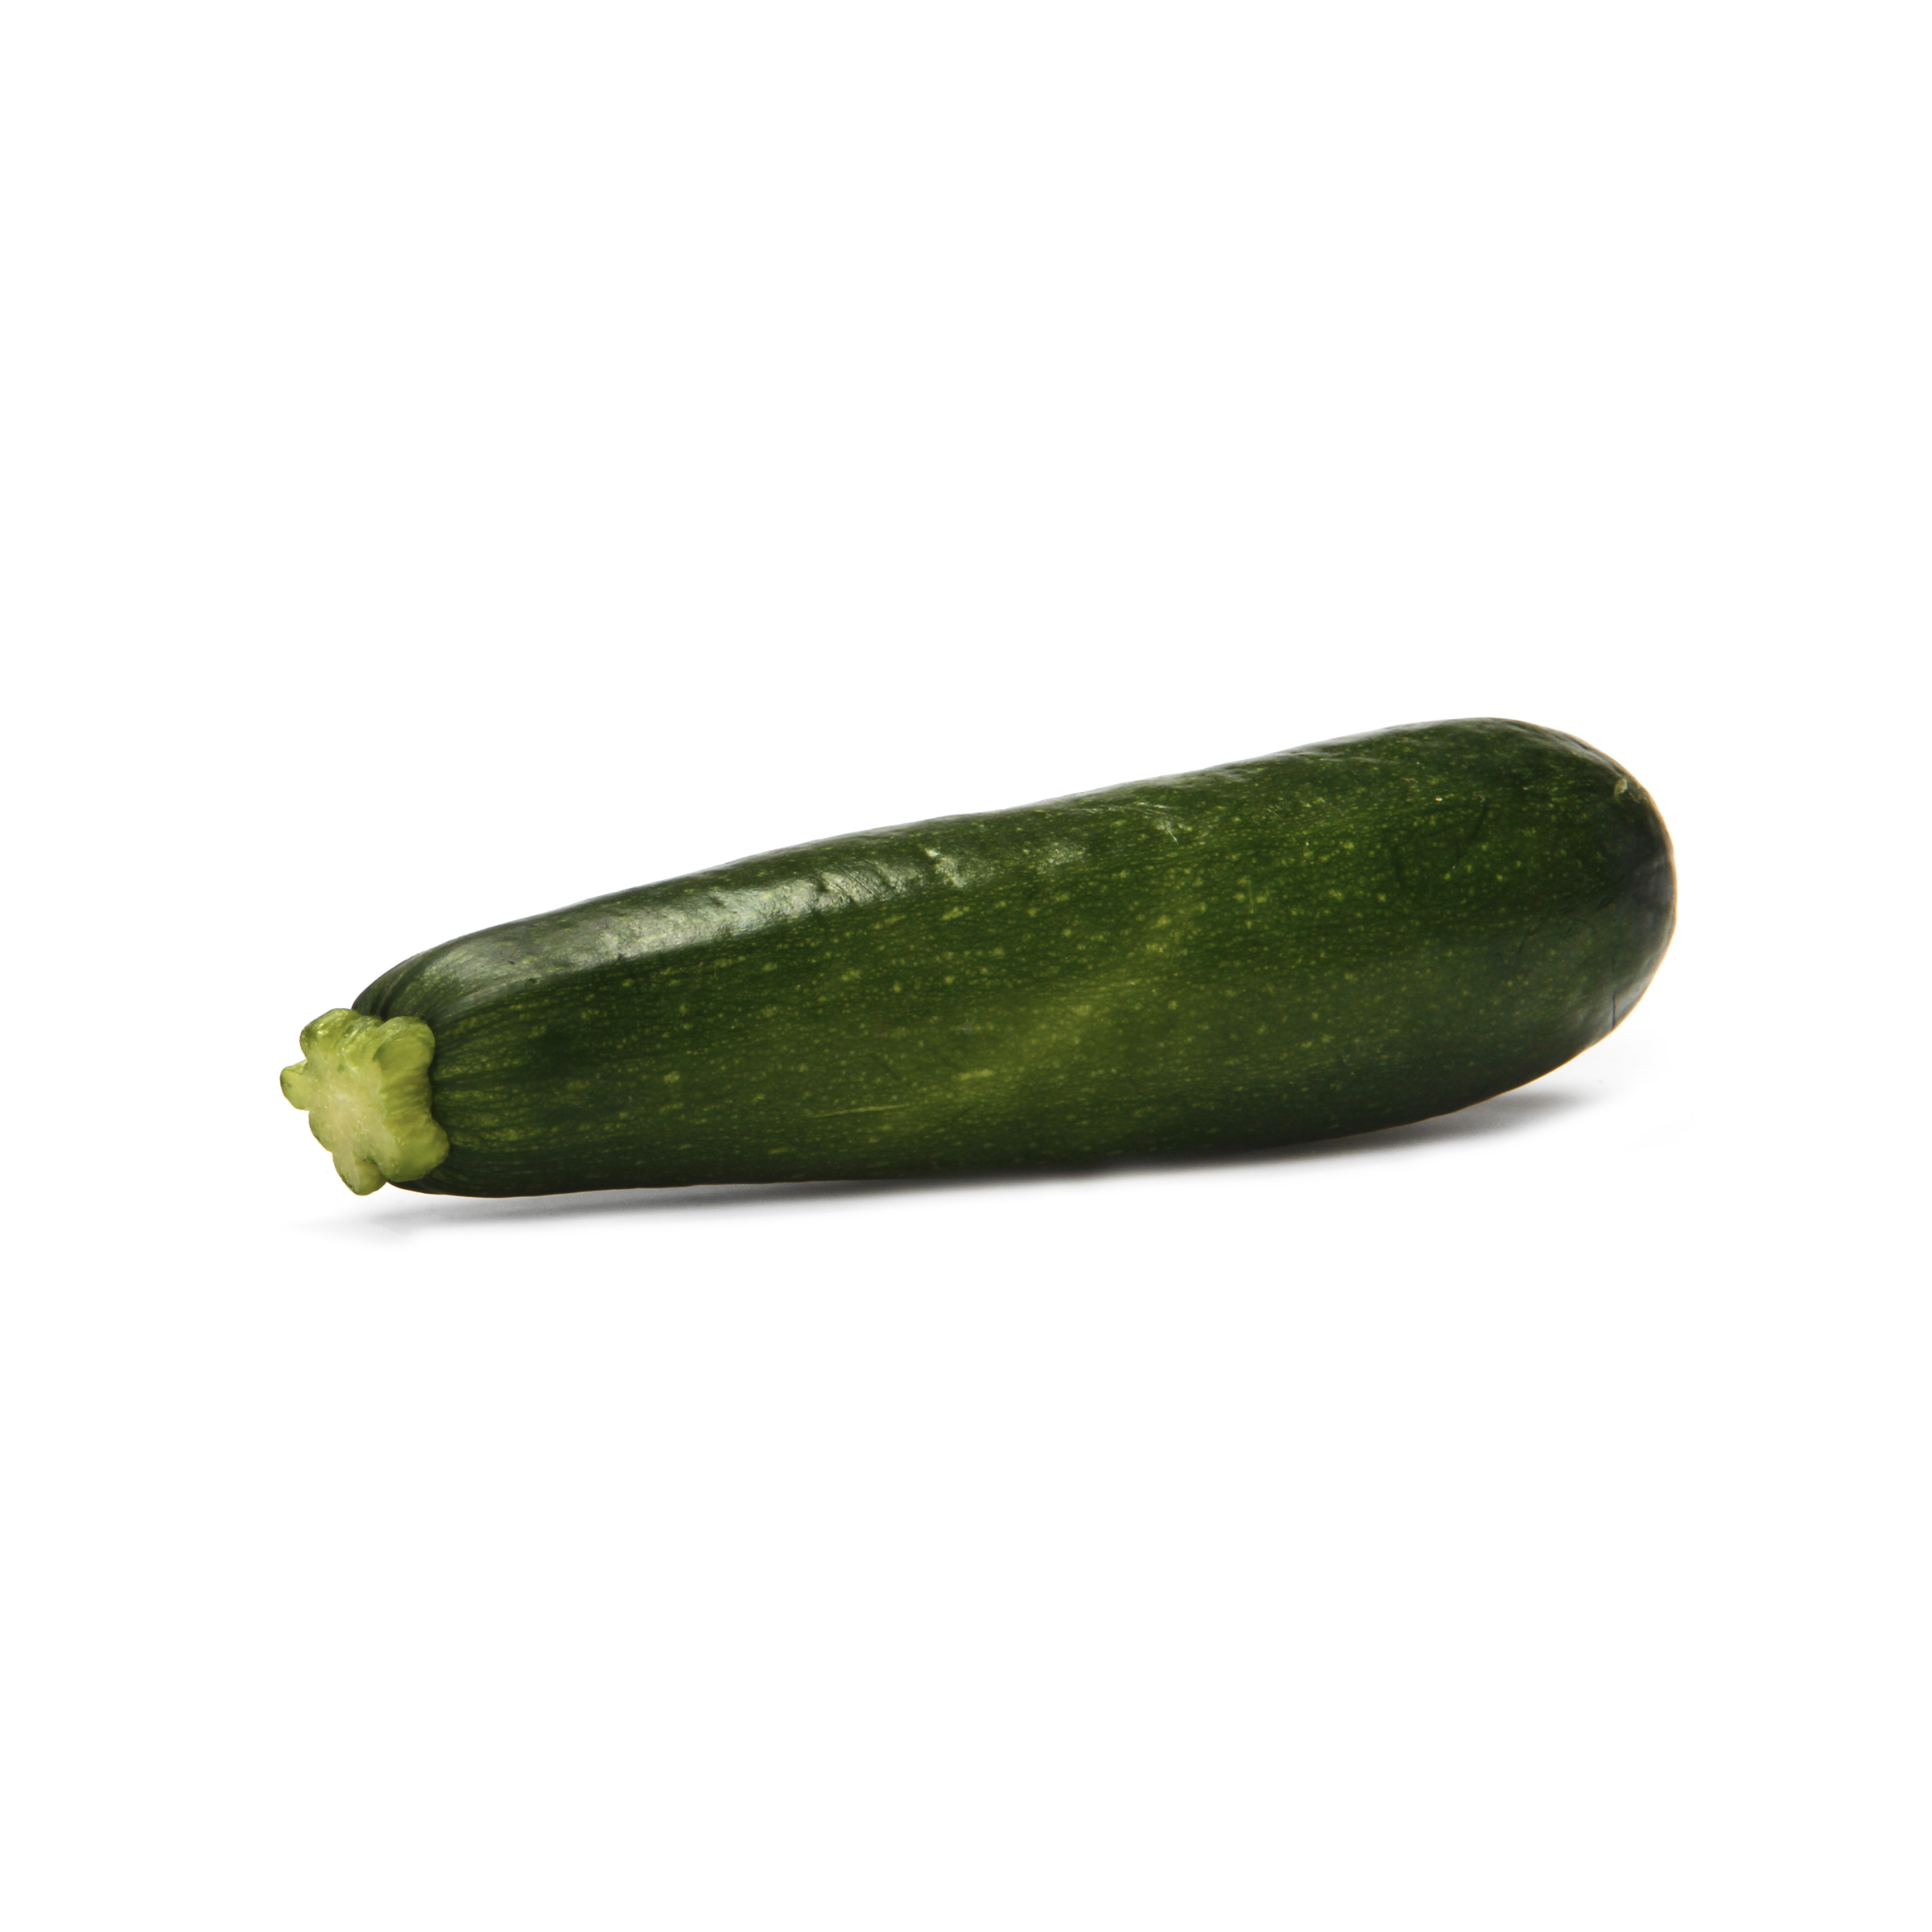 Gemüse mit dem niedrigsten Kohlenhydratgehalt: Zucchinikürbis